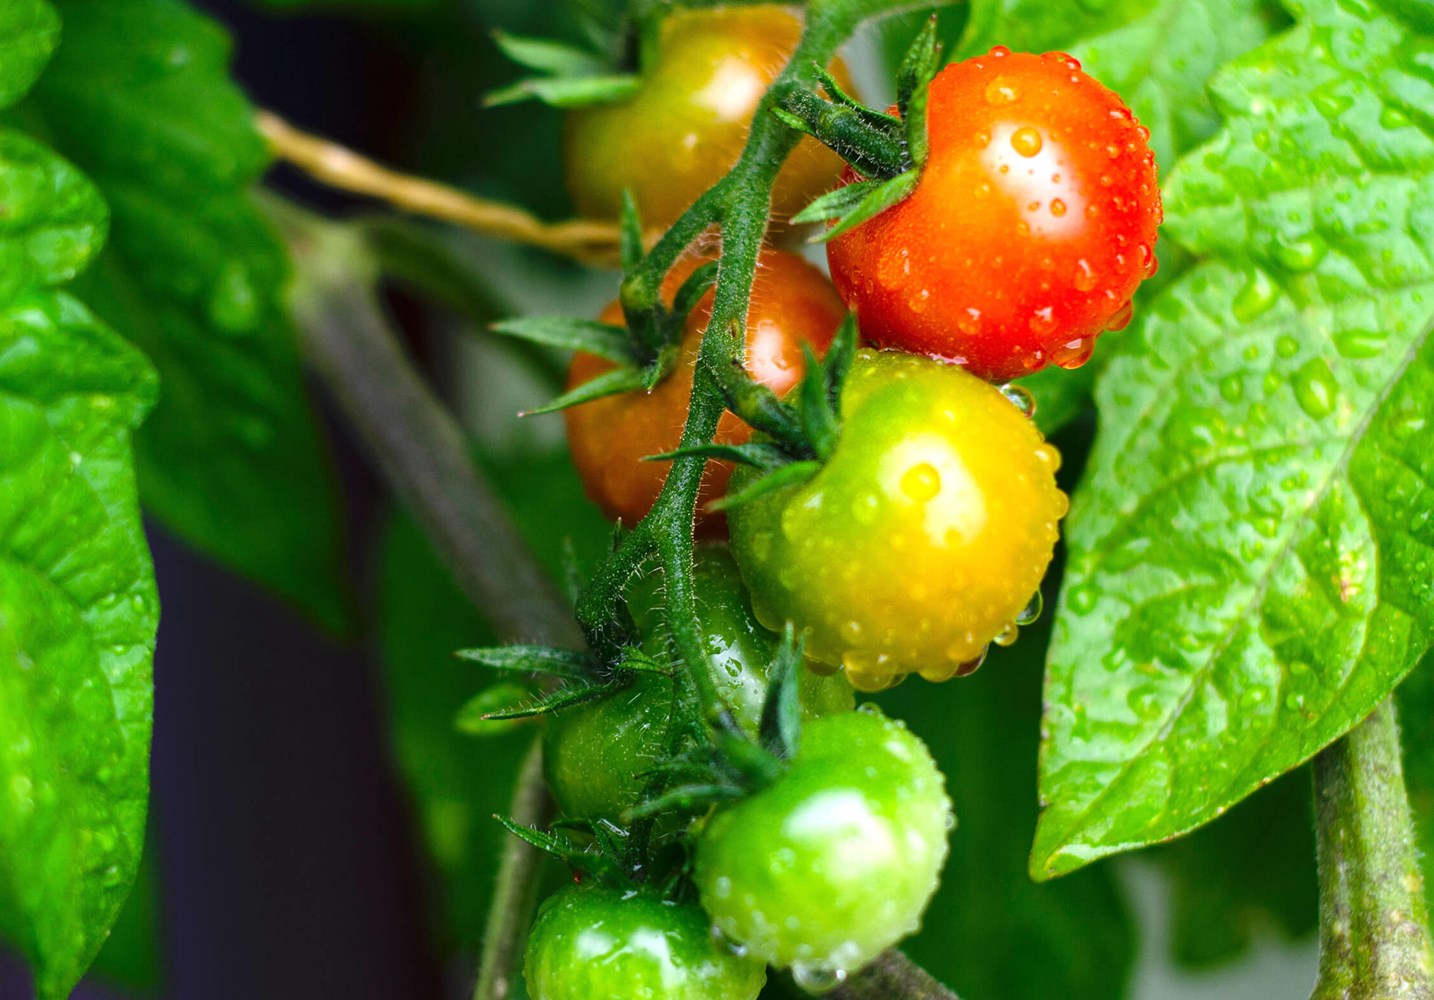 Tomatoes in garden